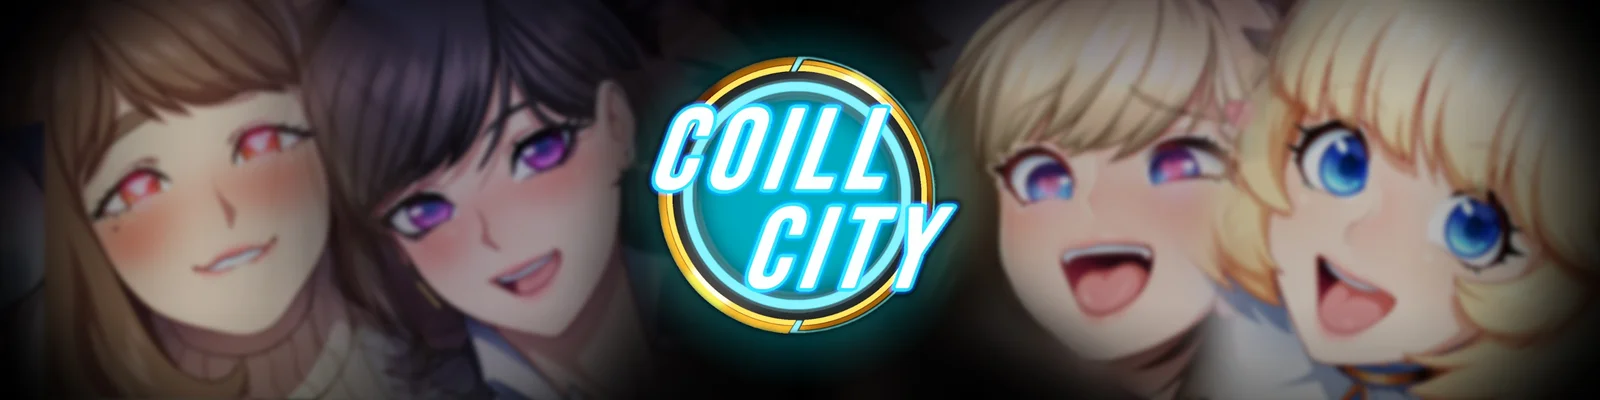 Coill City